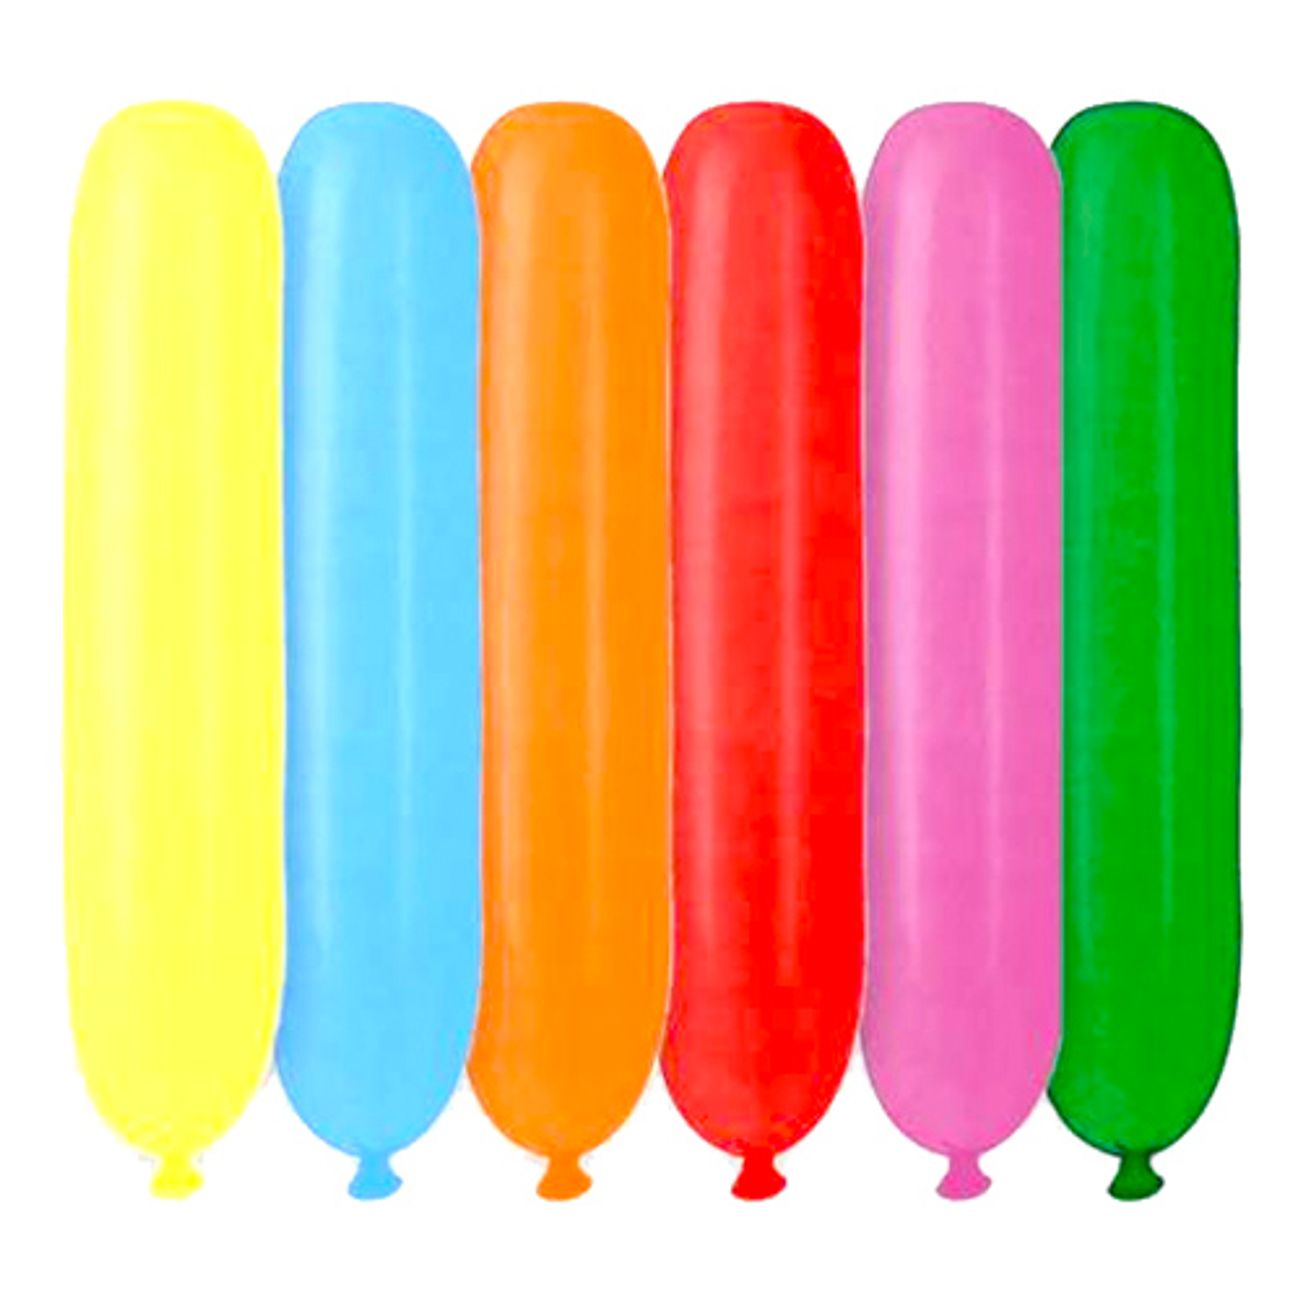 ballonger-avlanga-blandade-farger-1